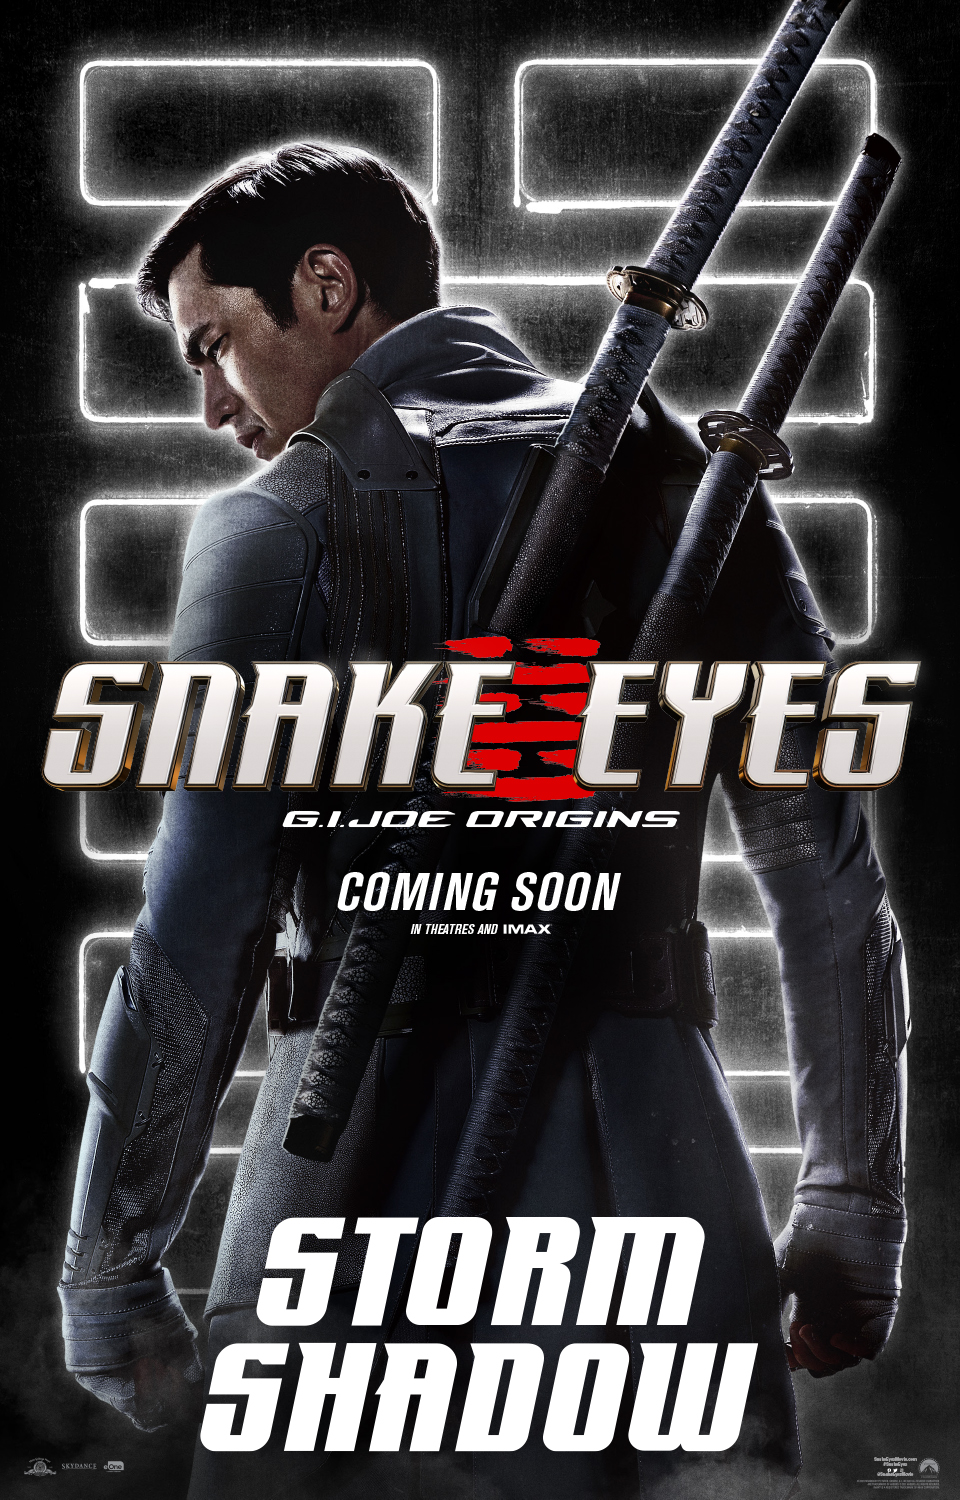 Bom tấn hành động Snakes Eyes: G.I.Joe Origins hé lộ tạo hình nhân vật của trai đẹp Henry Golding và dàn ninja cực ngầu - Ảnh 2.